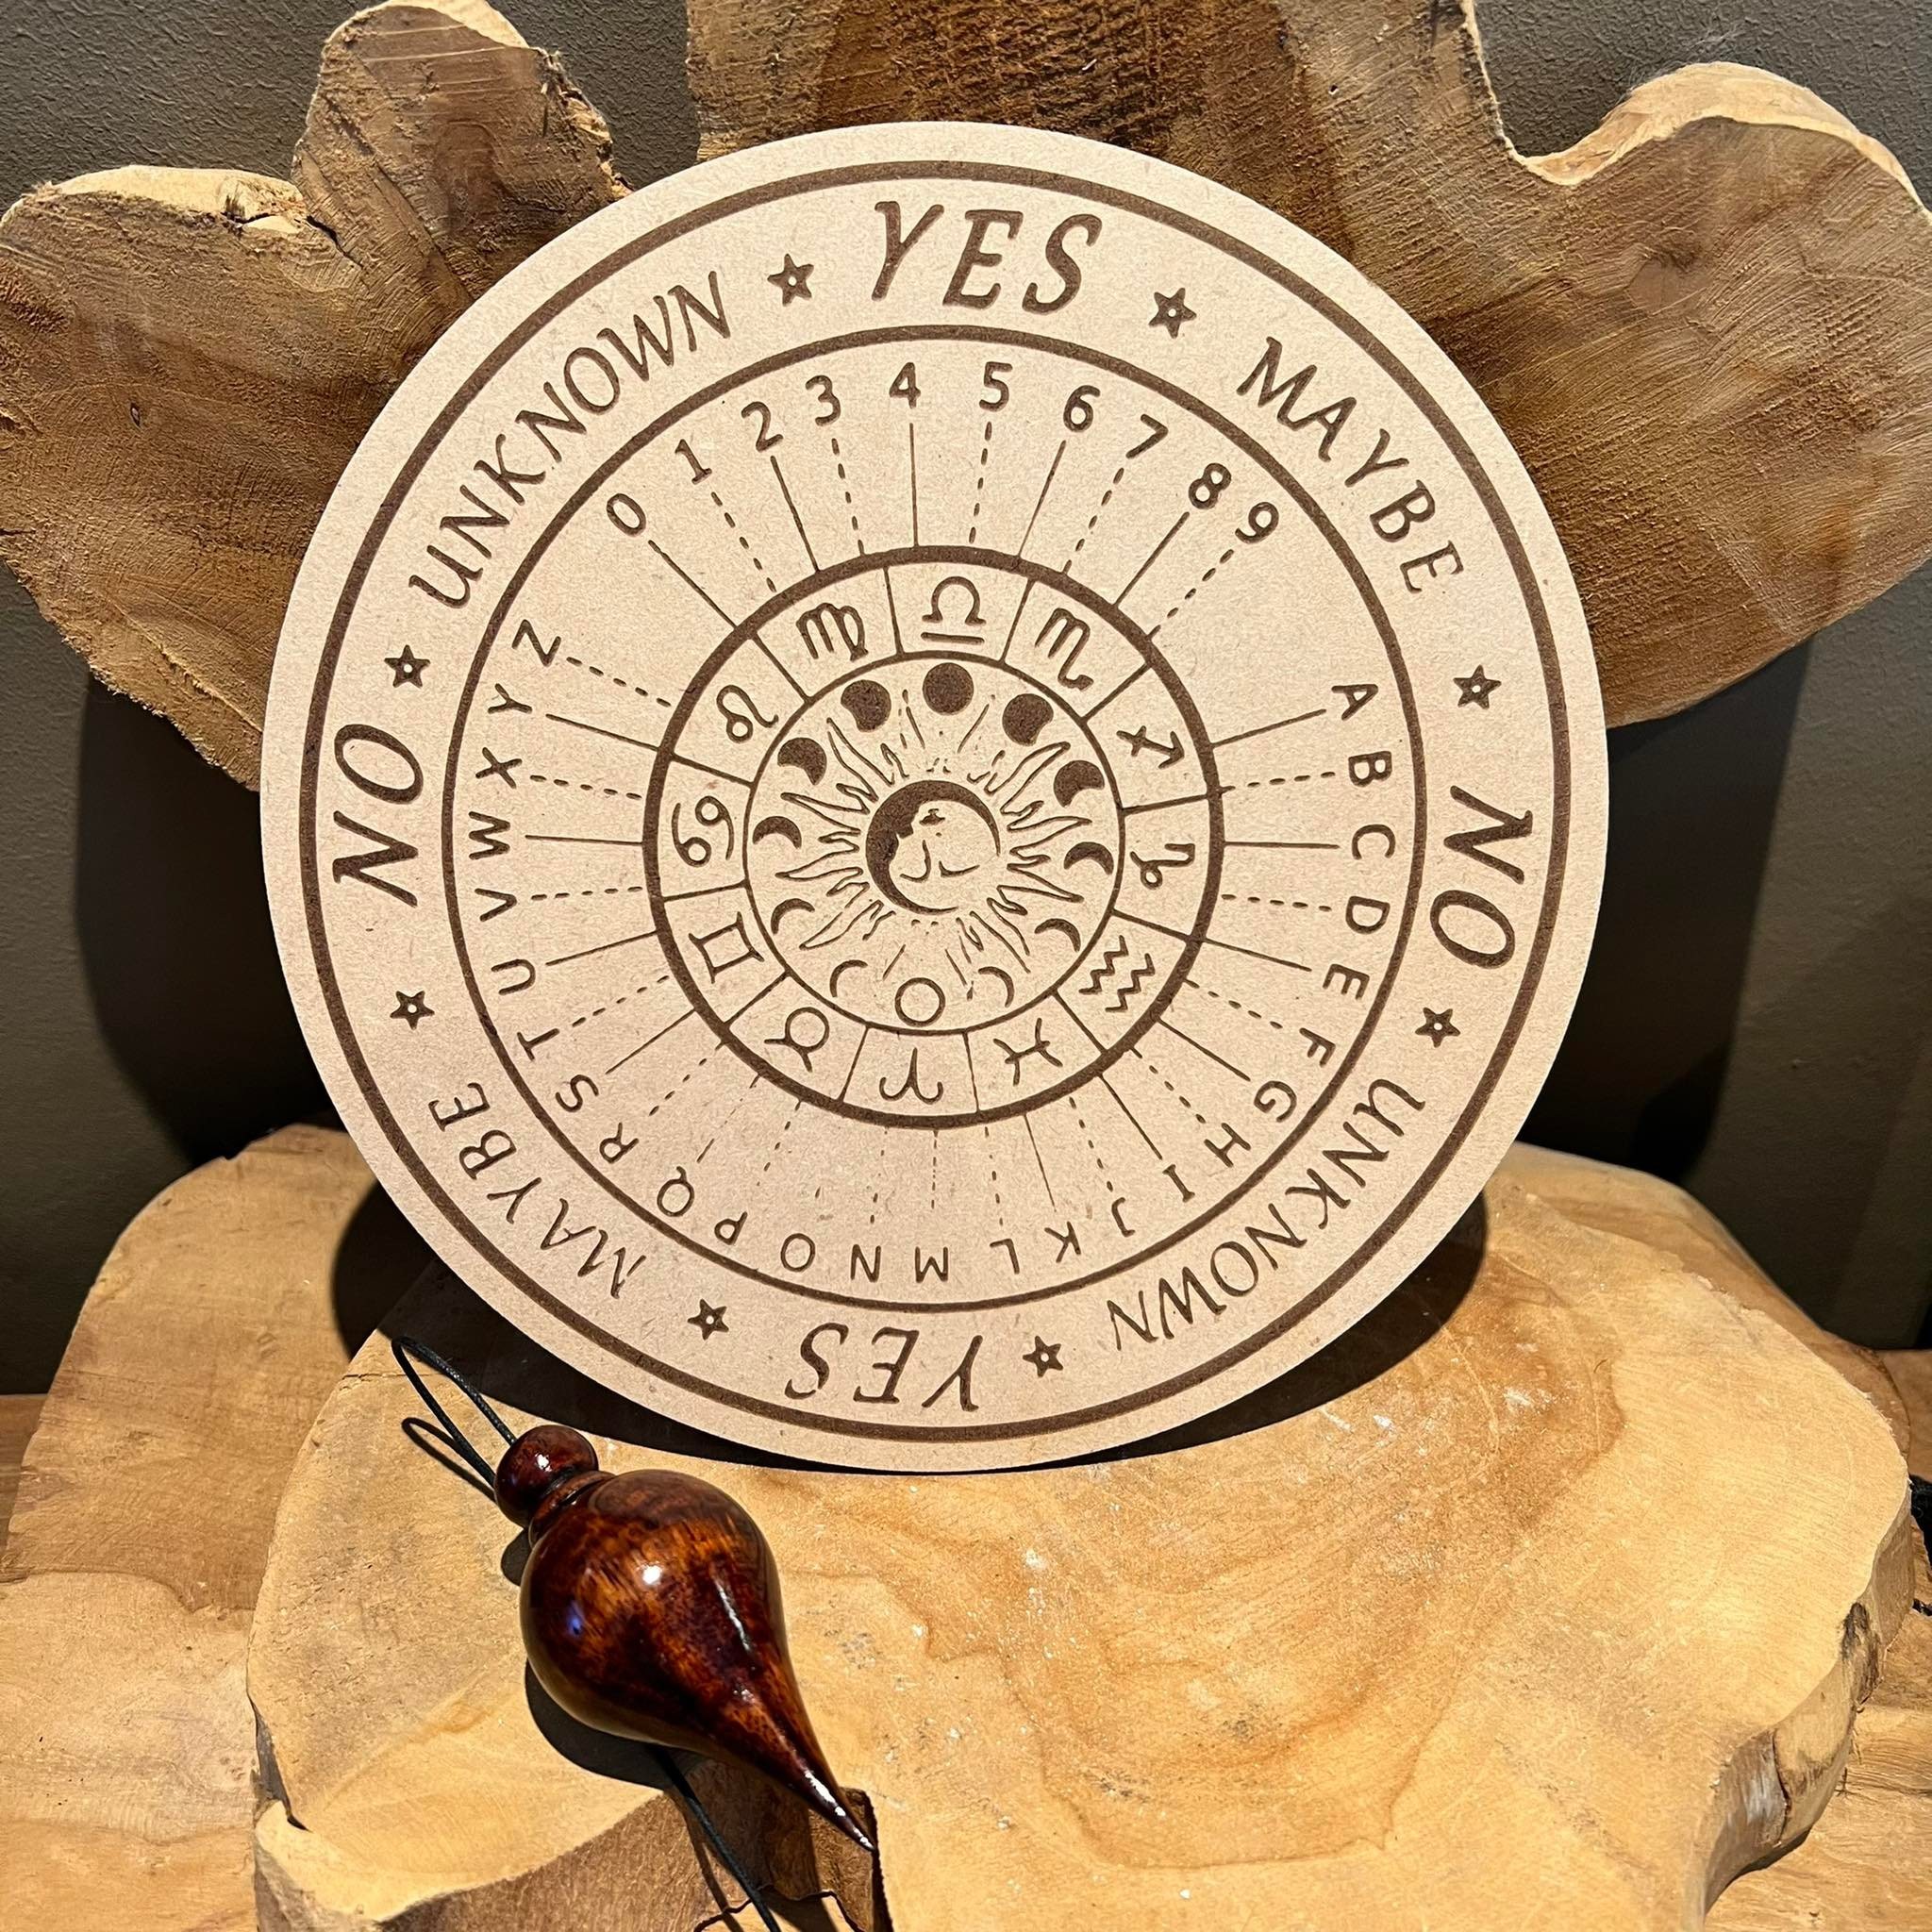 Planche Pendule en bois astrologie pour vous aider à penduler